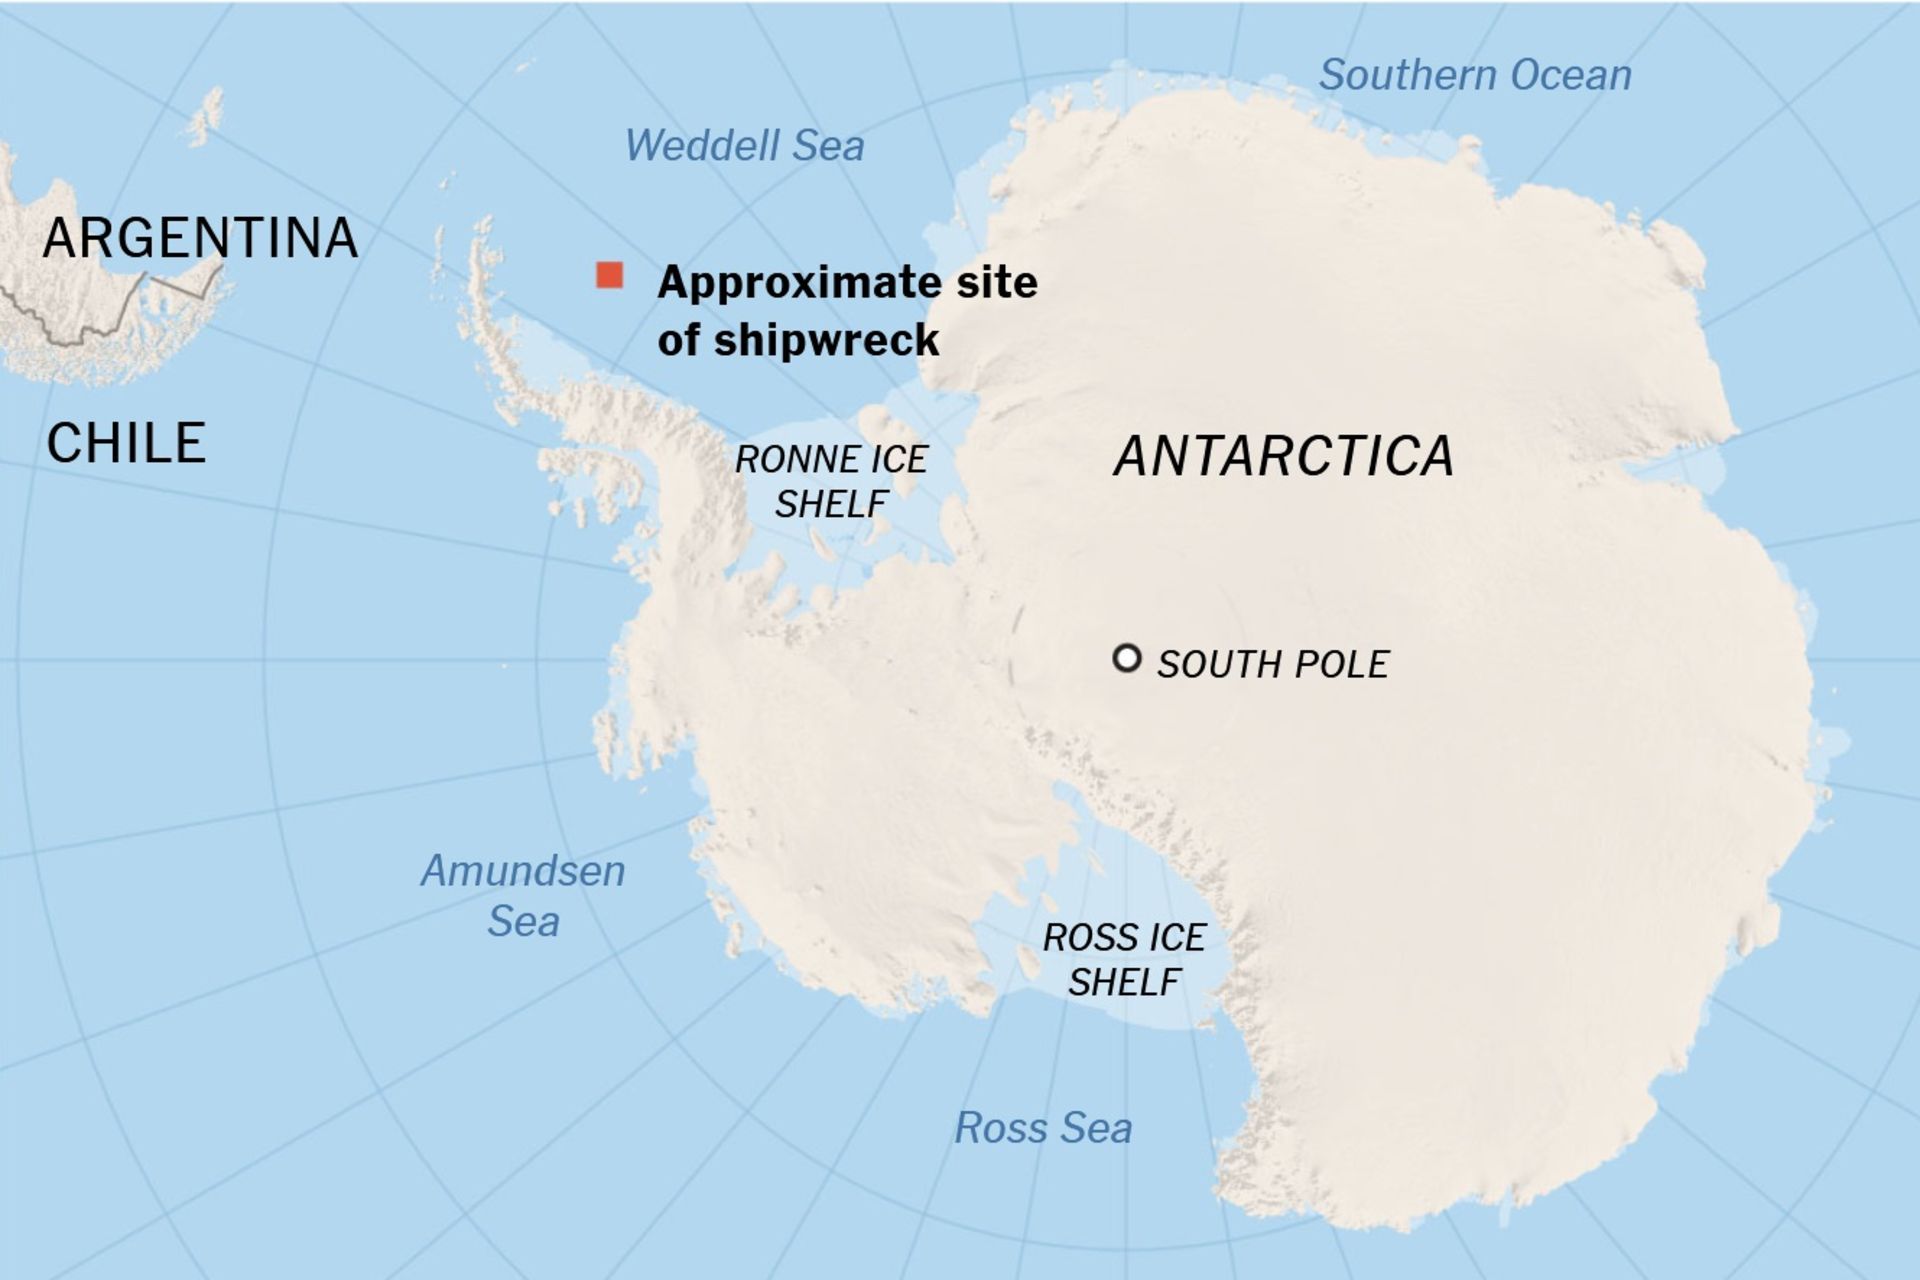 محل تقریبی غرق شدن کشتی شکلتون قطب جنوب